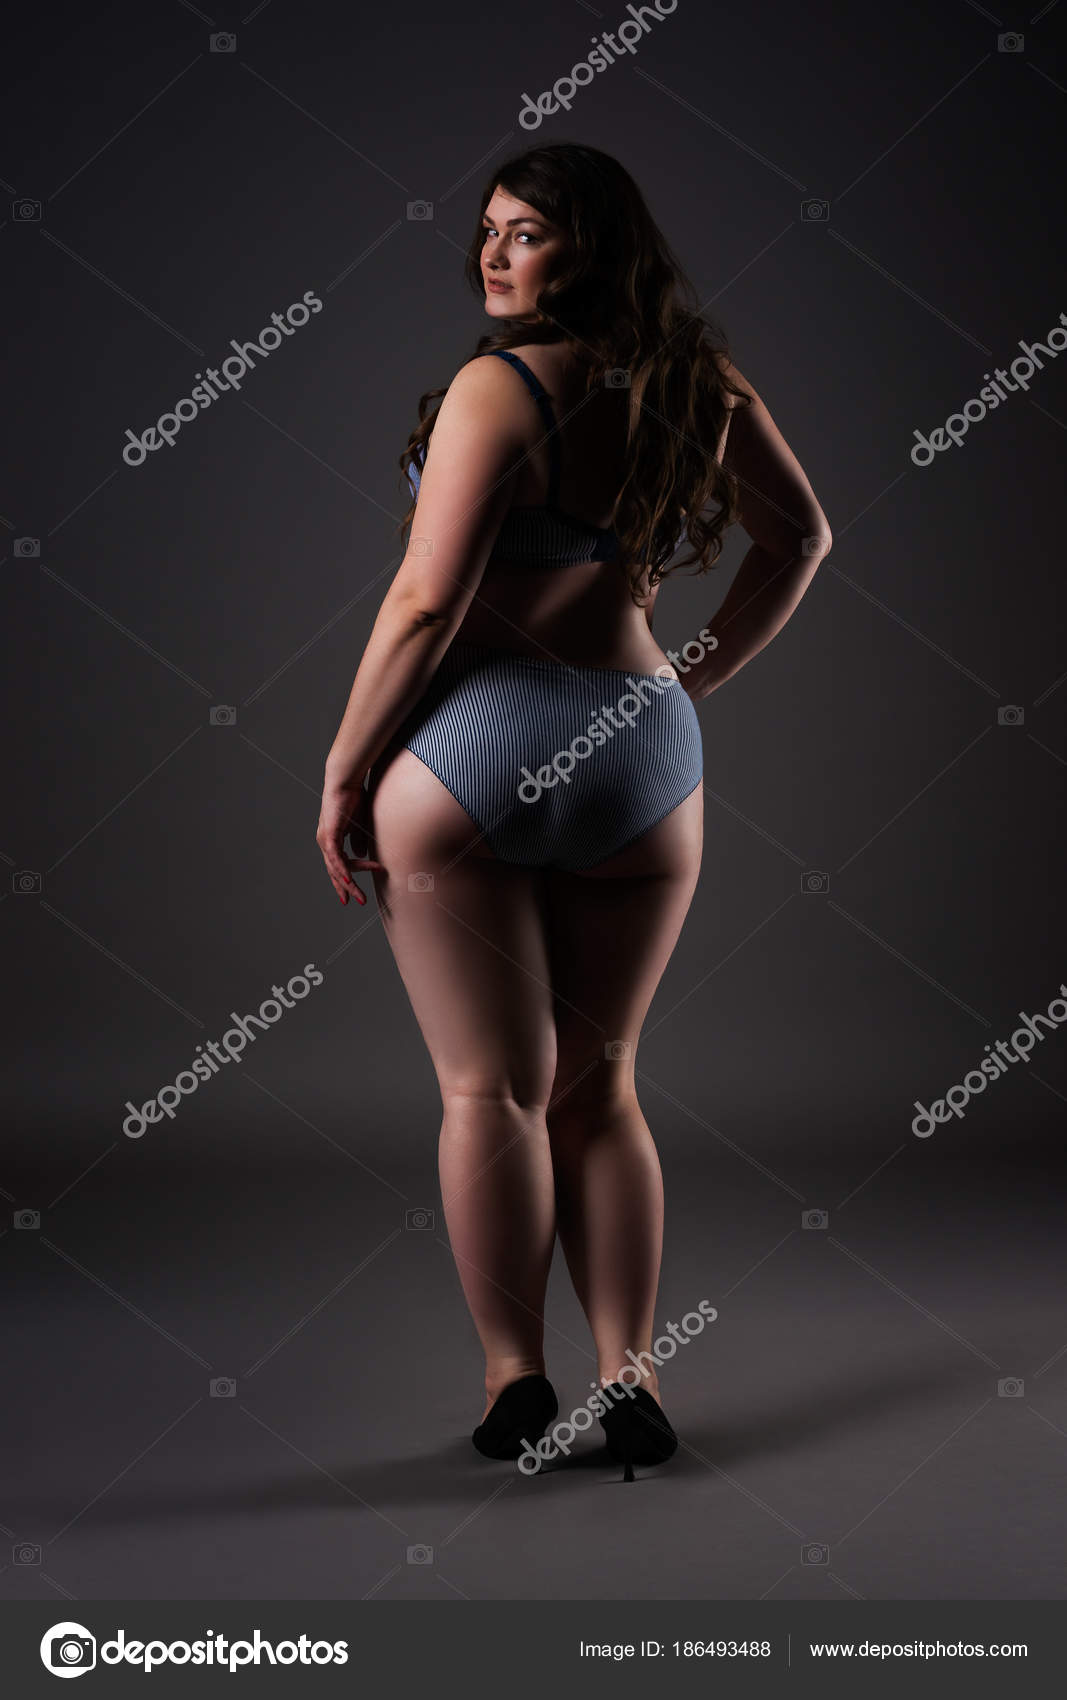 Obese girls sexy Hot Brazilian